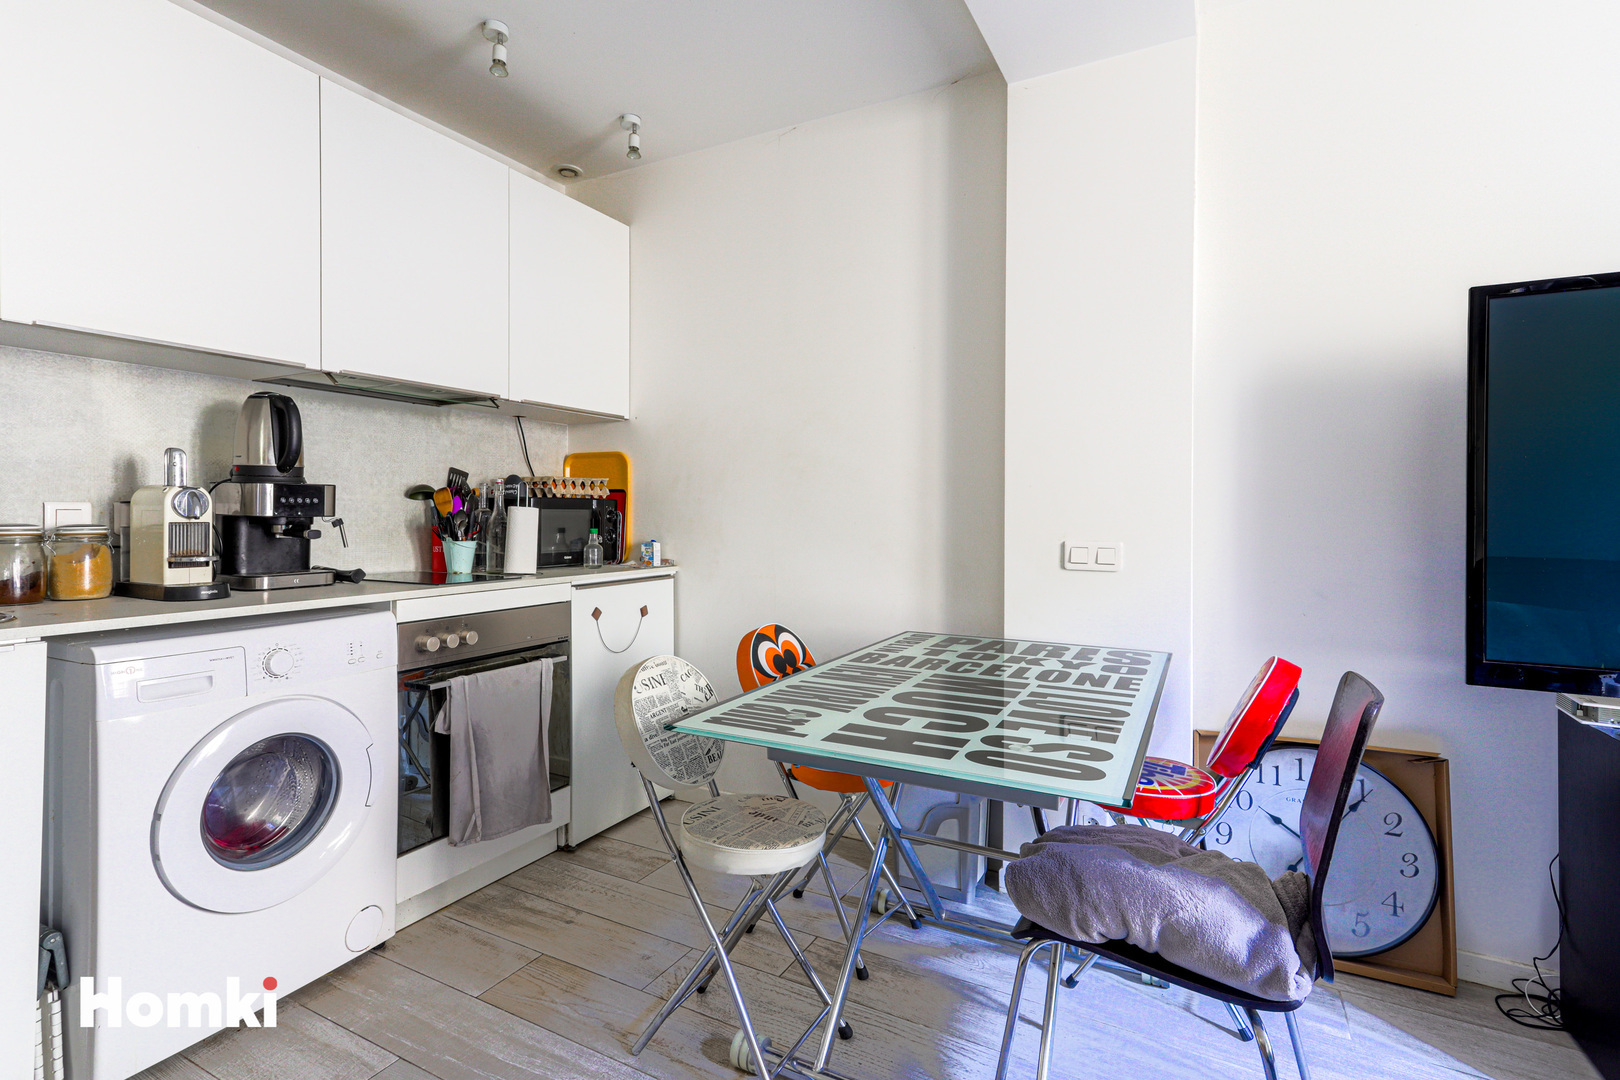 Homki - Vente Appartement  de 20.0 m² à Nice 06000